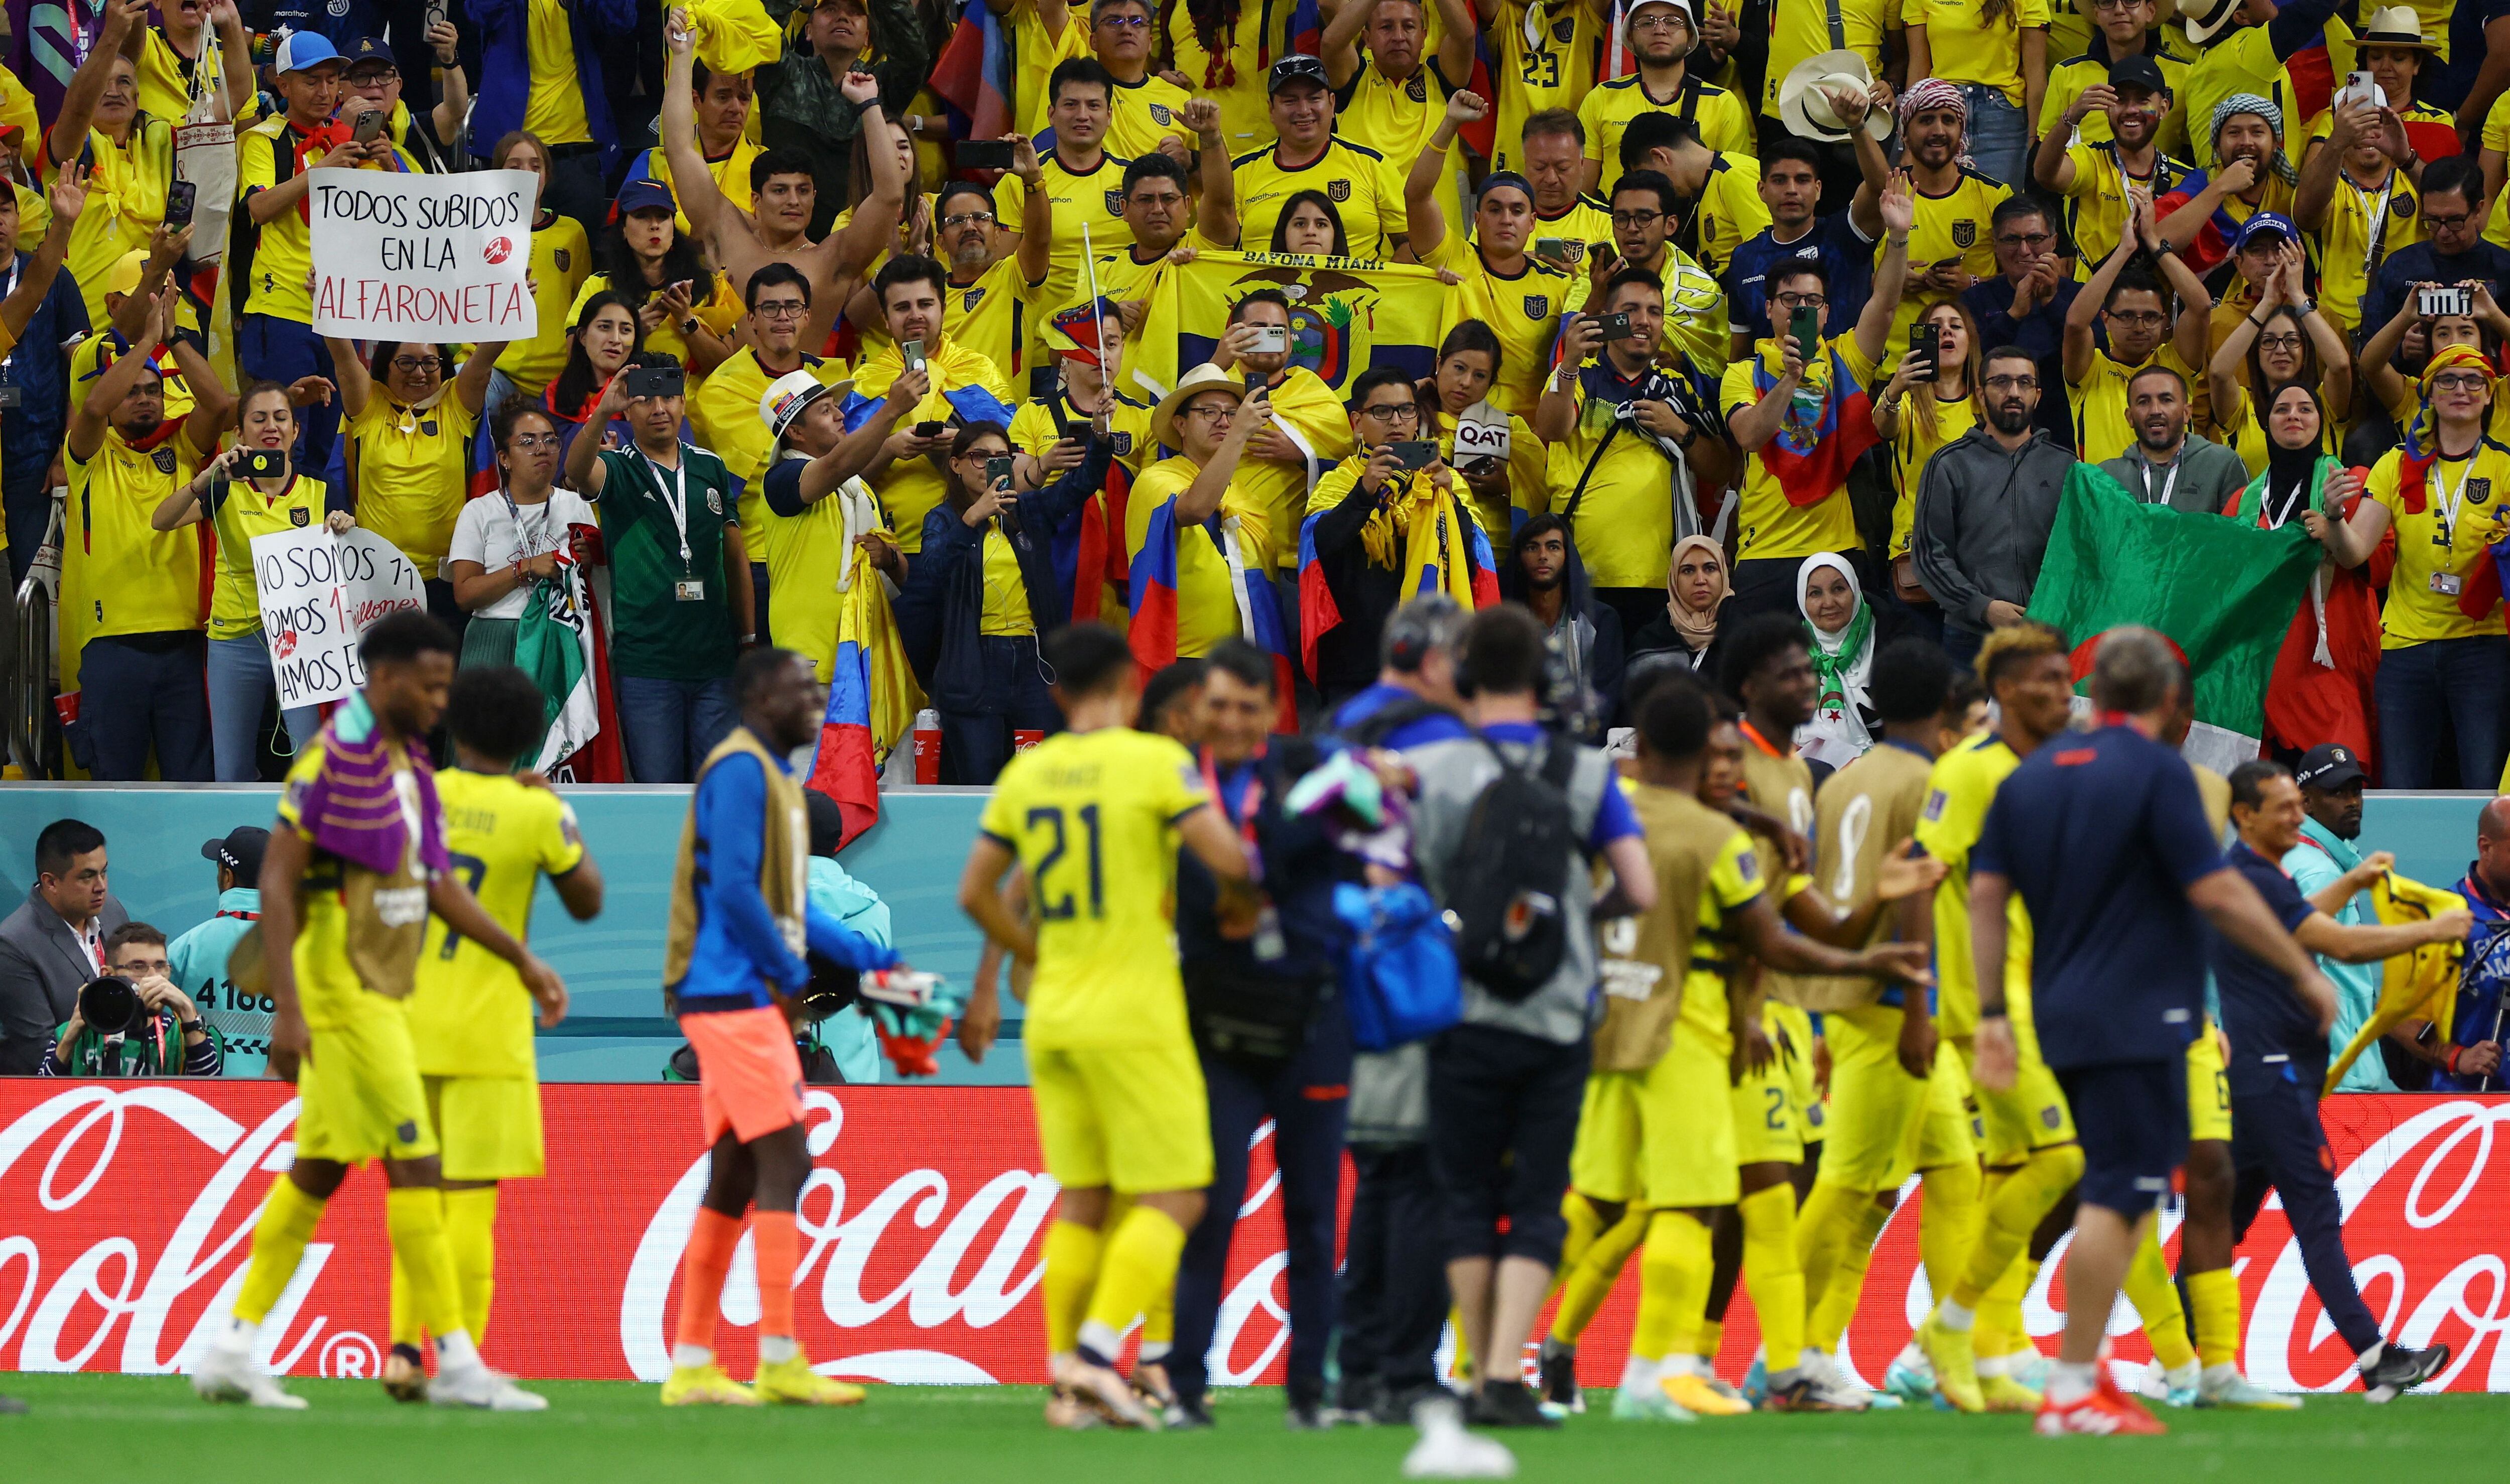 Los jugadores y aficionados de Ecuador celebran después del partido. REUTERS/Kai Pfaffenbach